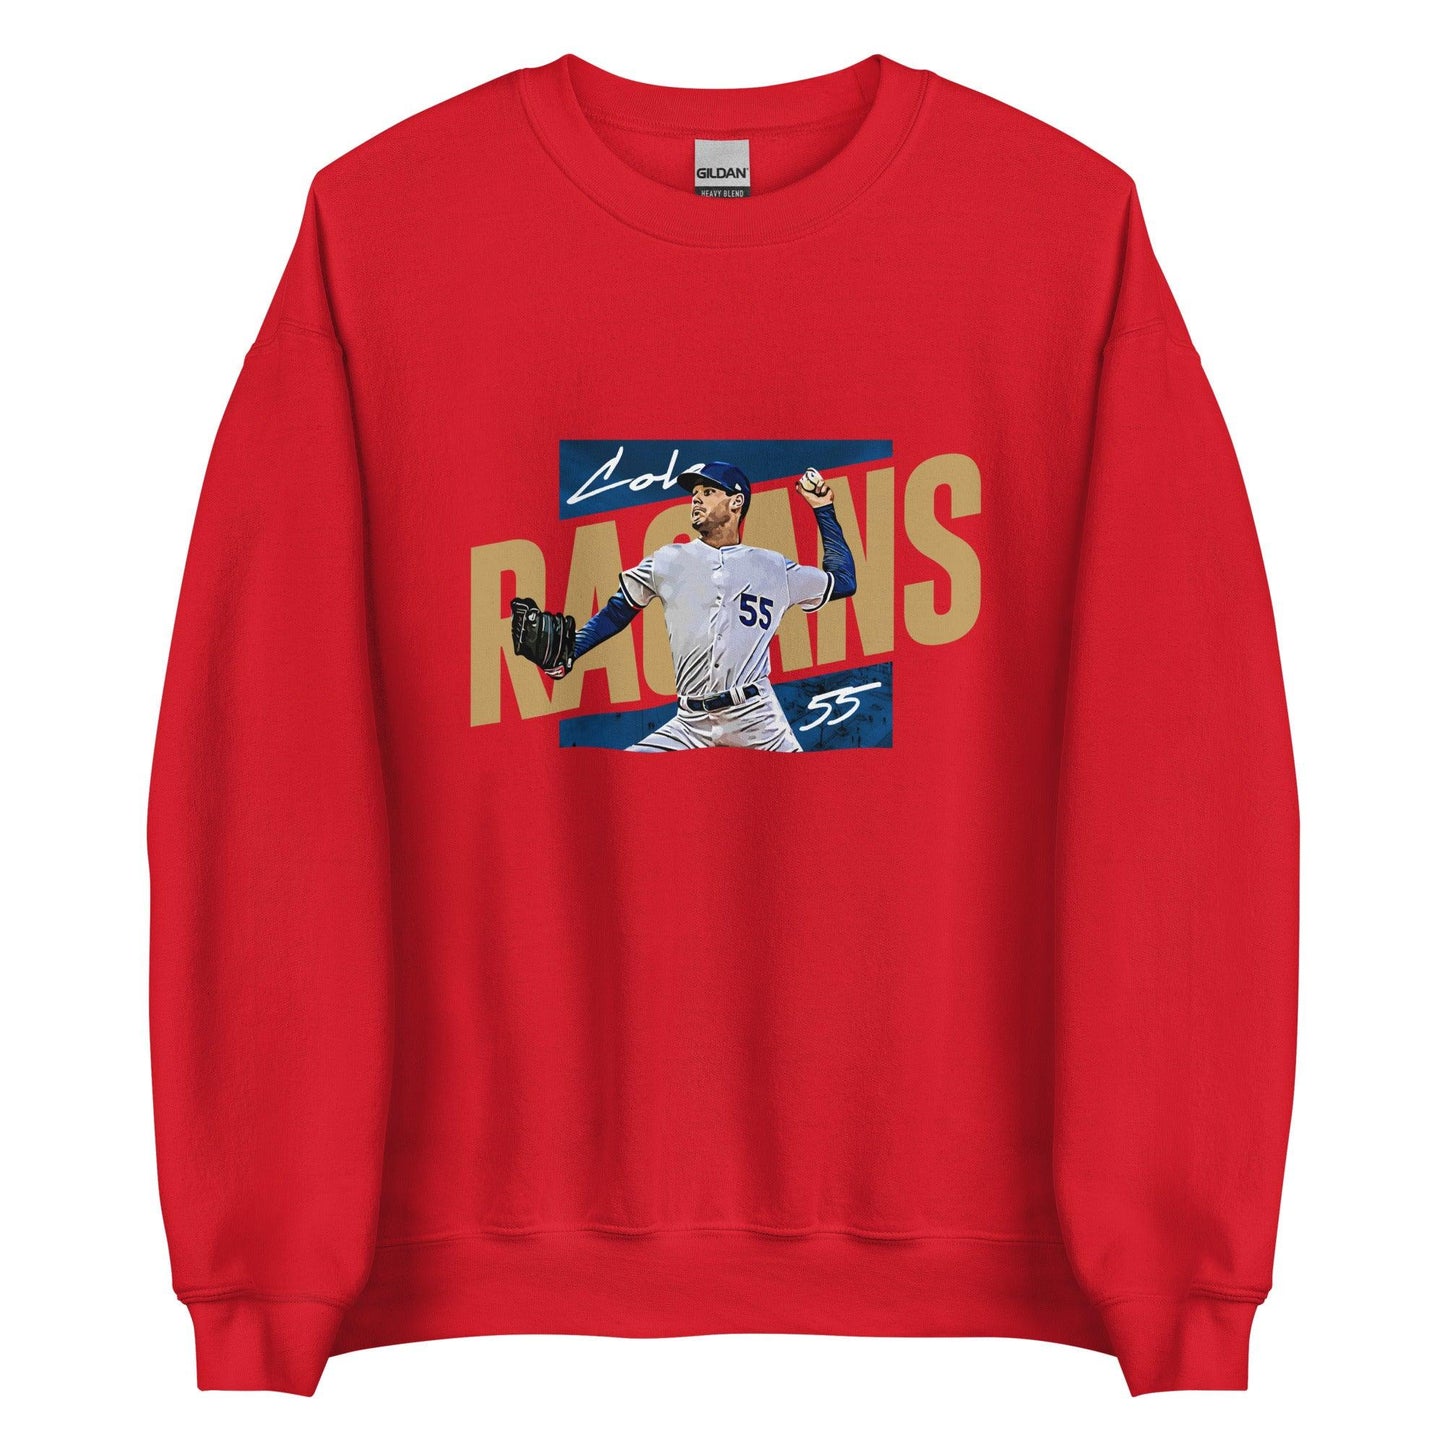 Cole Ragans "Gameday" Sweatshirt - Fan Arch